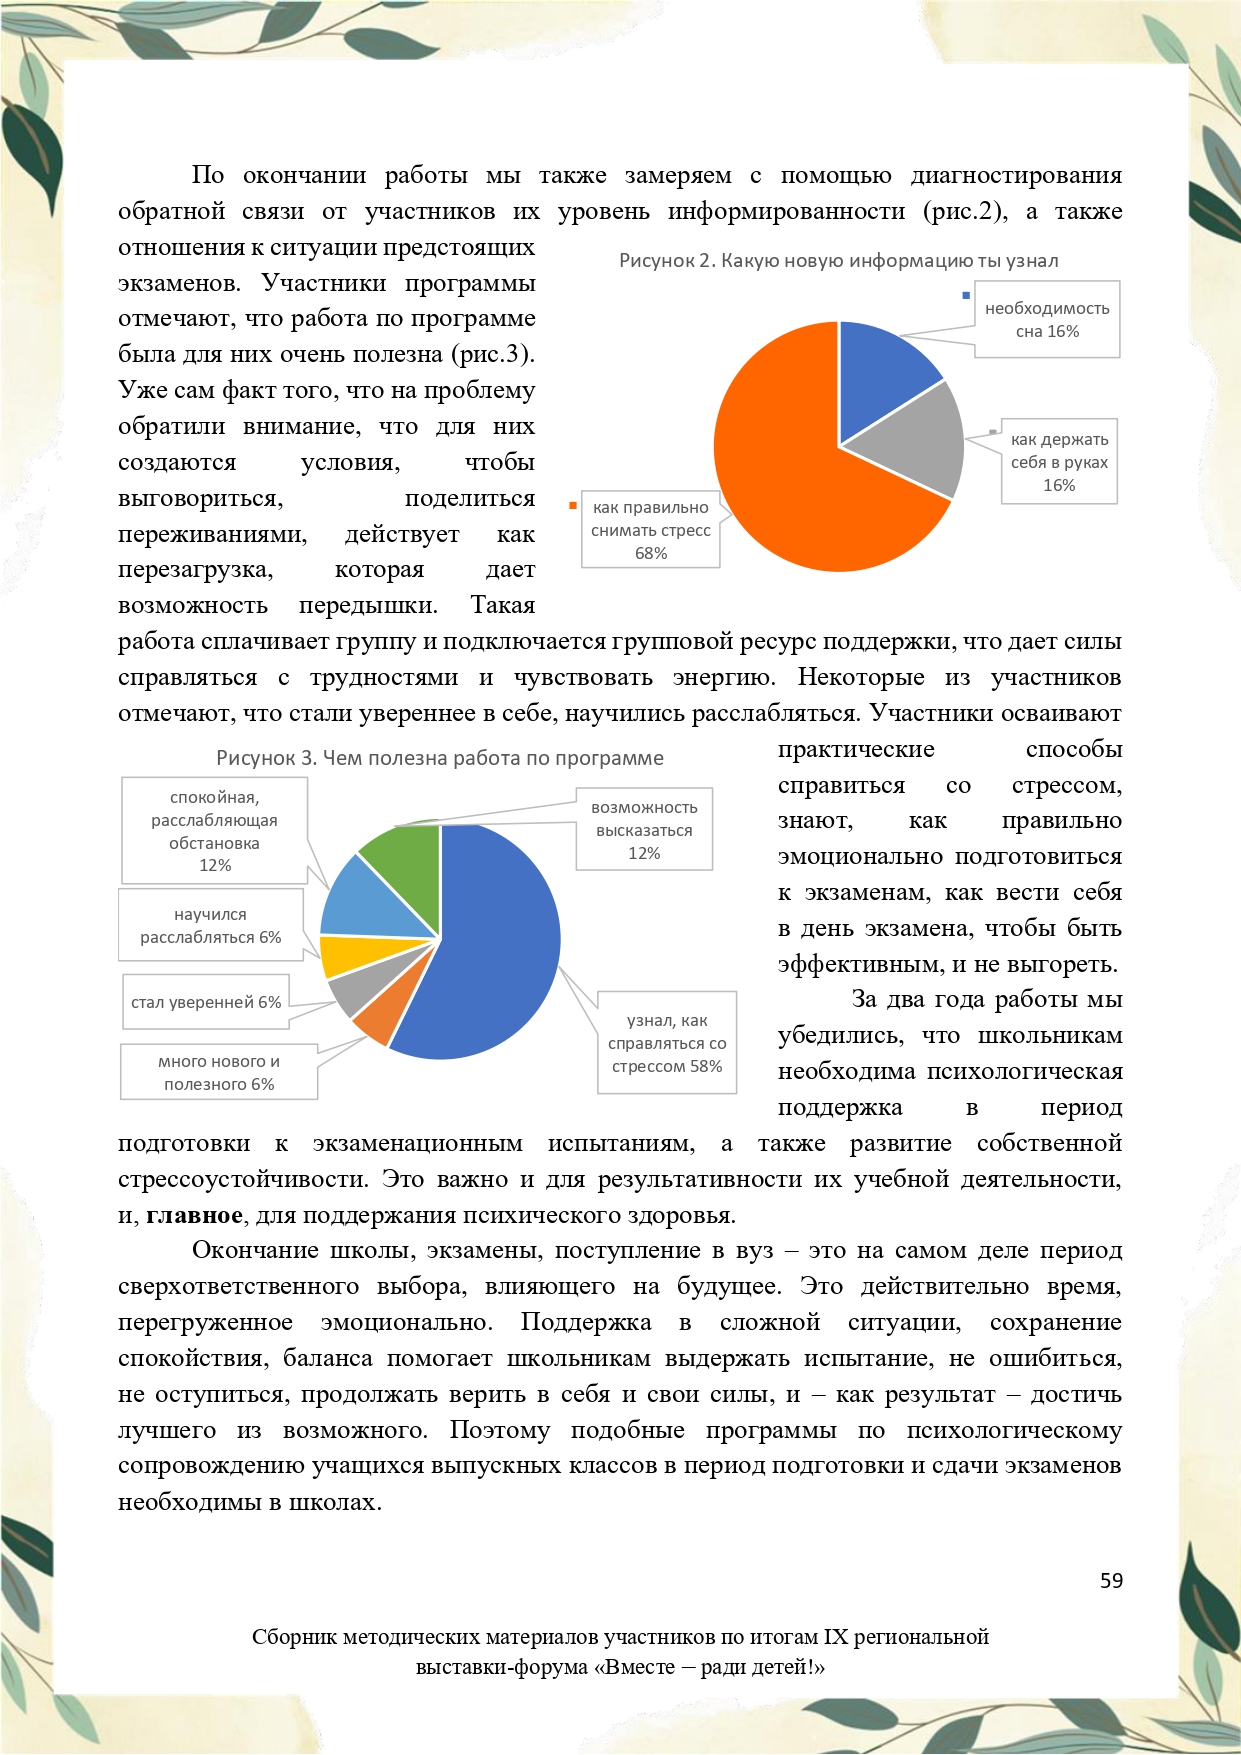 Sbornik_metodicheskikh_materialov_uchastnikov_IX_regionalnoy_vystavki-foruma_Vmeste__radi_detey_33__2023_page-0059